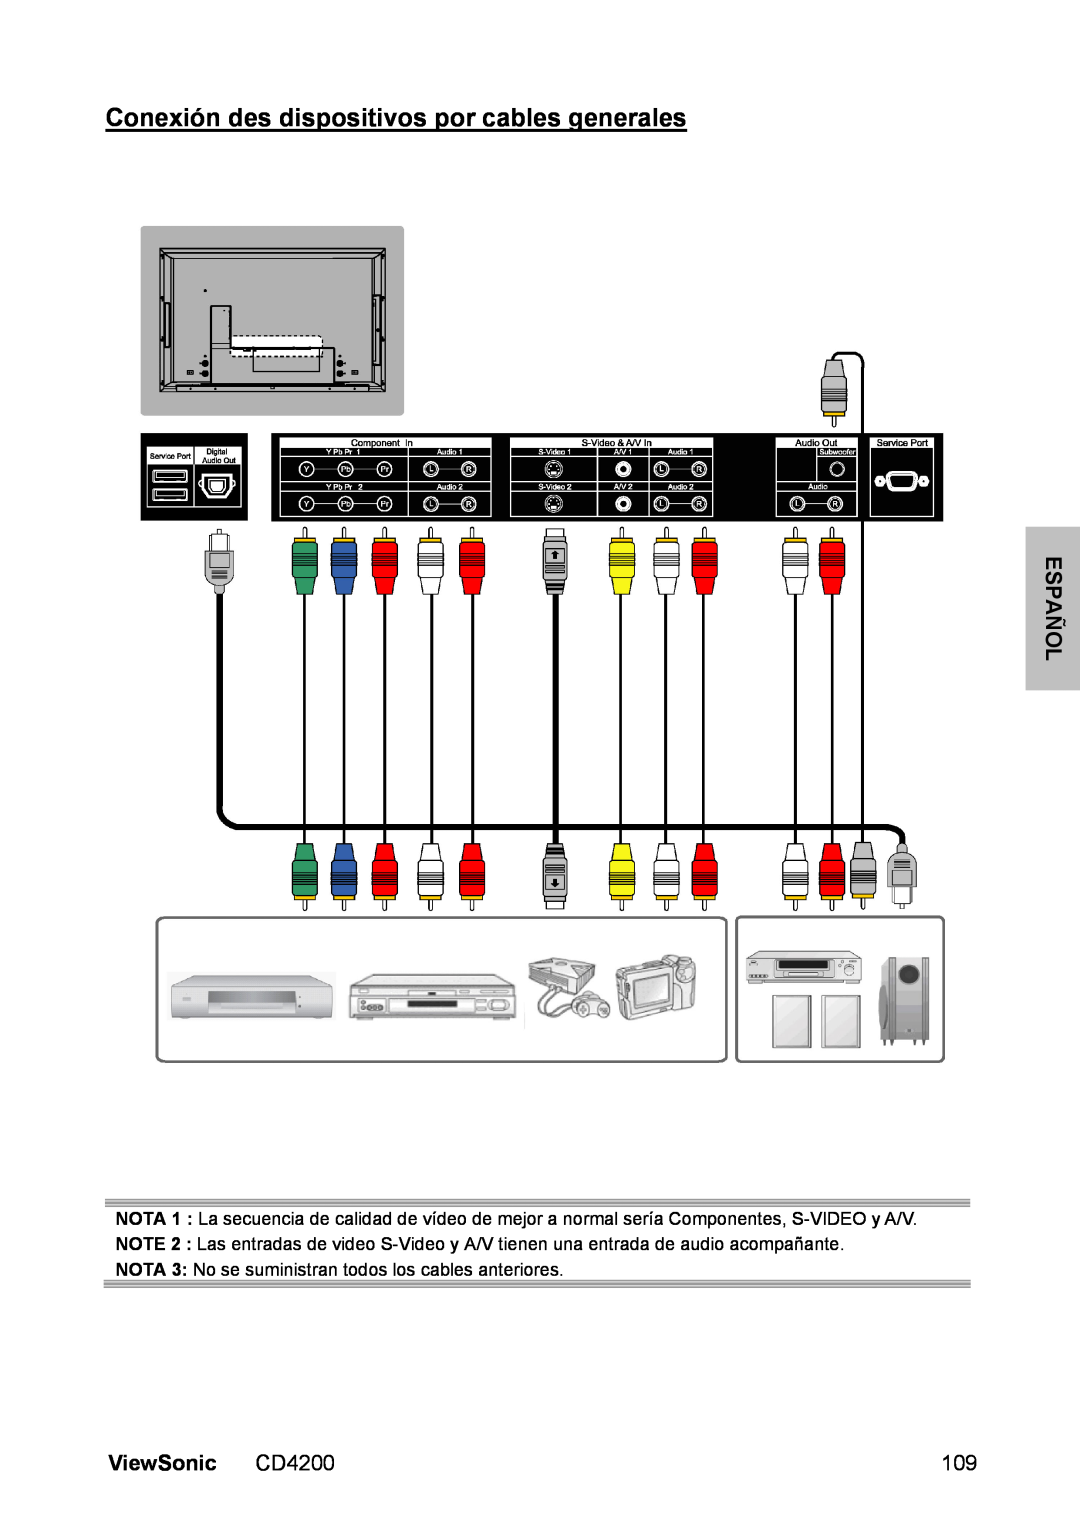 ViewSonic manual Conexión des dispositivos por cables generales, Español, ViewSonic CD4200 